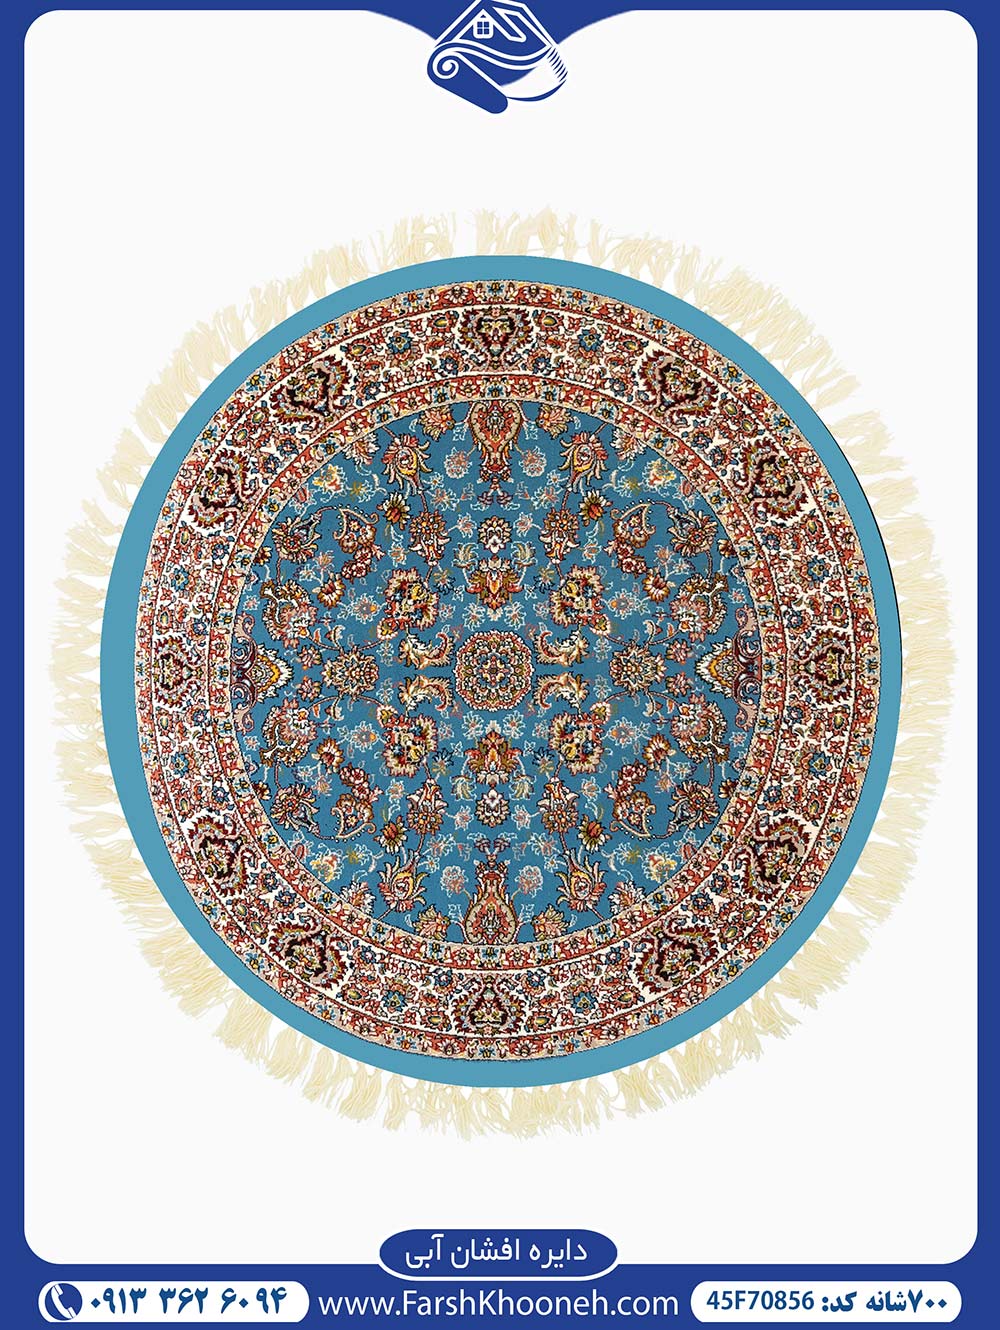 فروش فرش دایره ای در رنگ ملایم و چشم نواز آبی